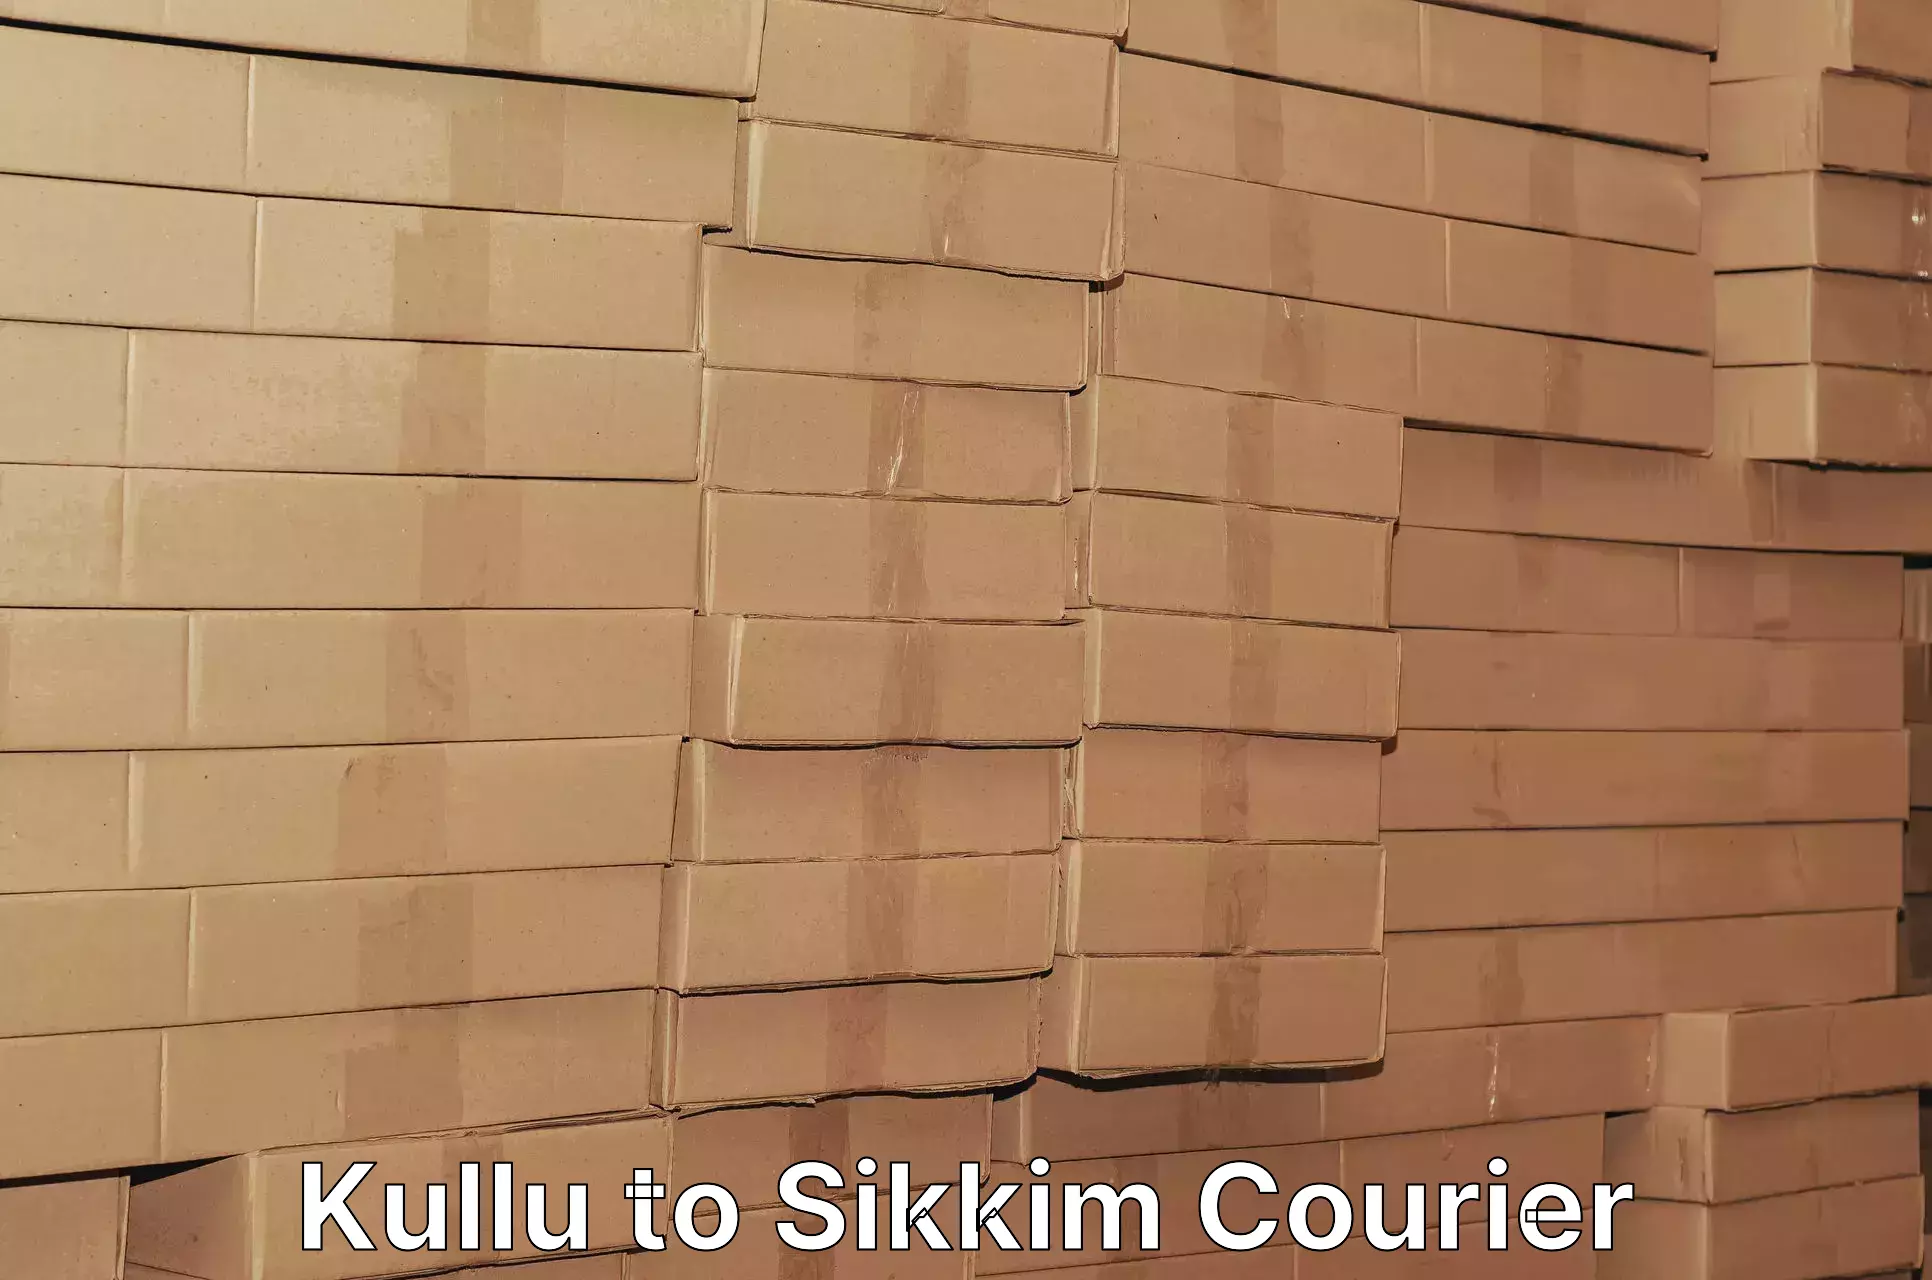 Express logistics service Kullu to South Sikkim